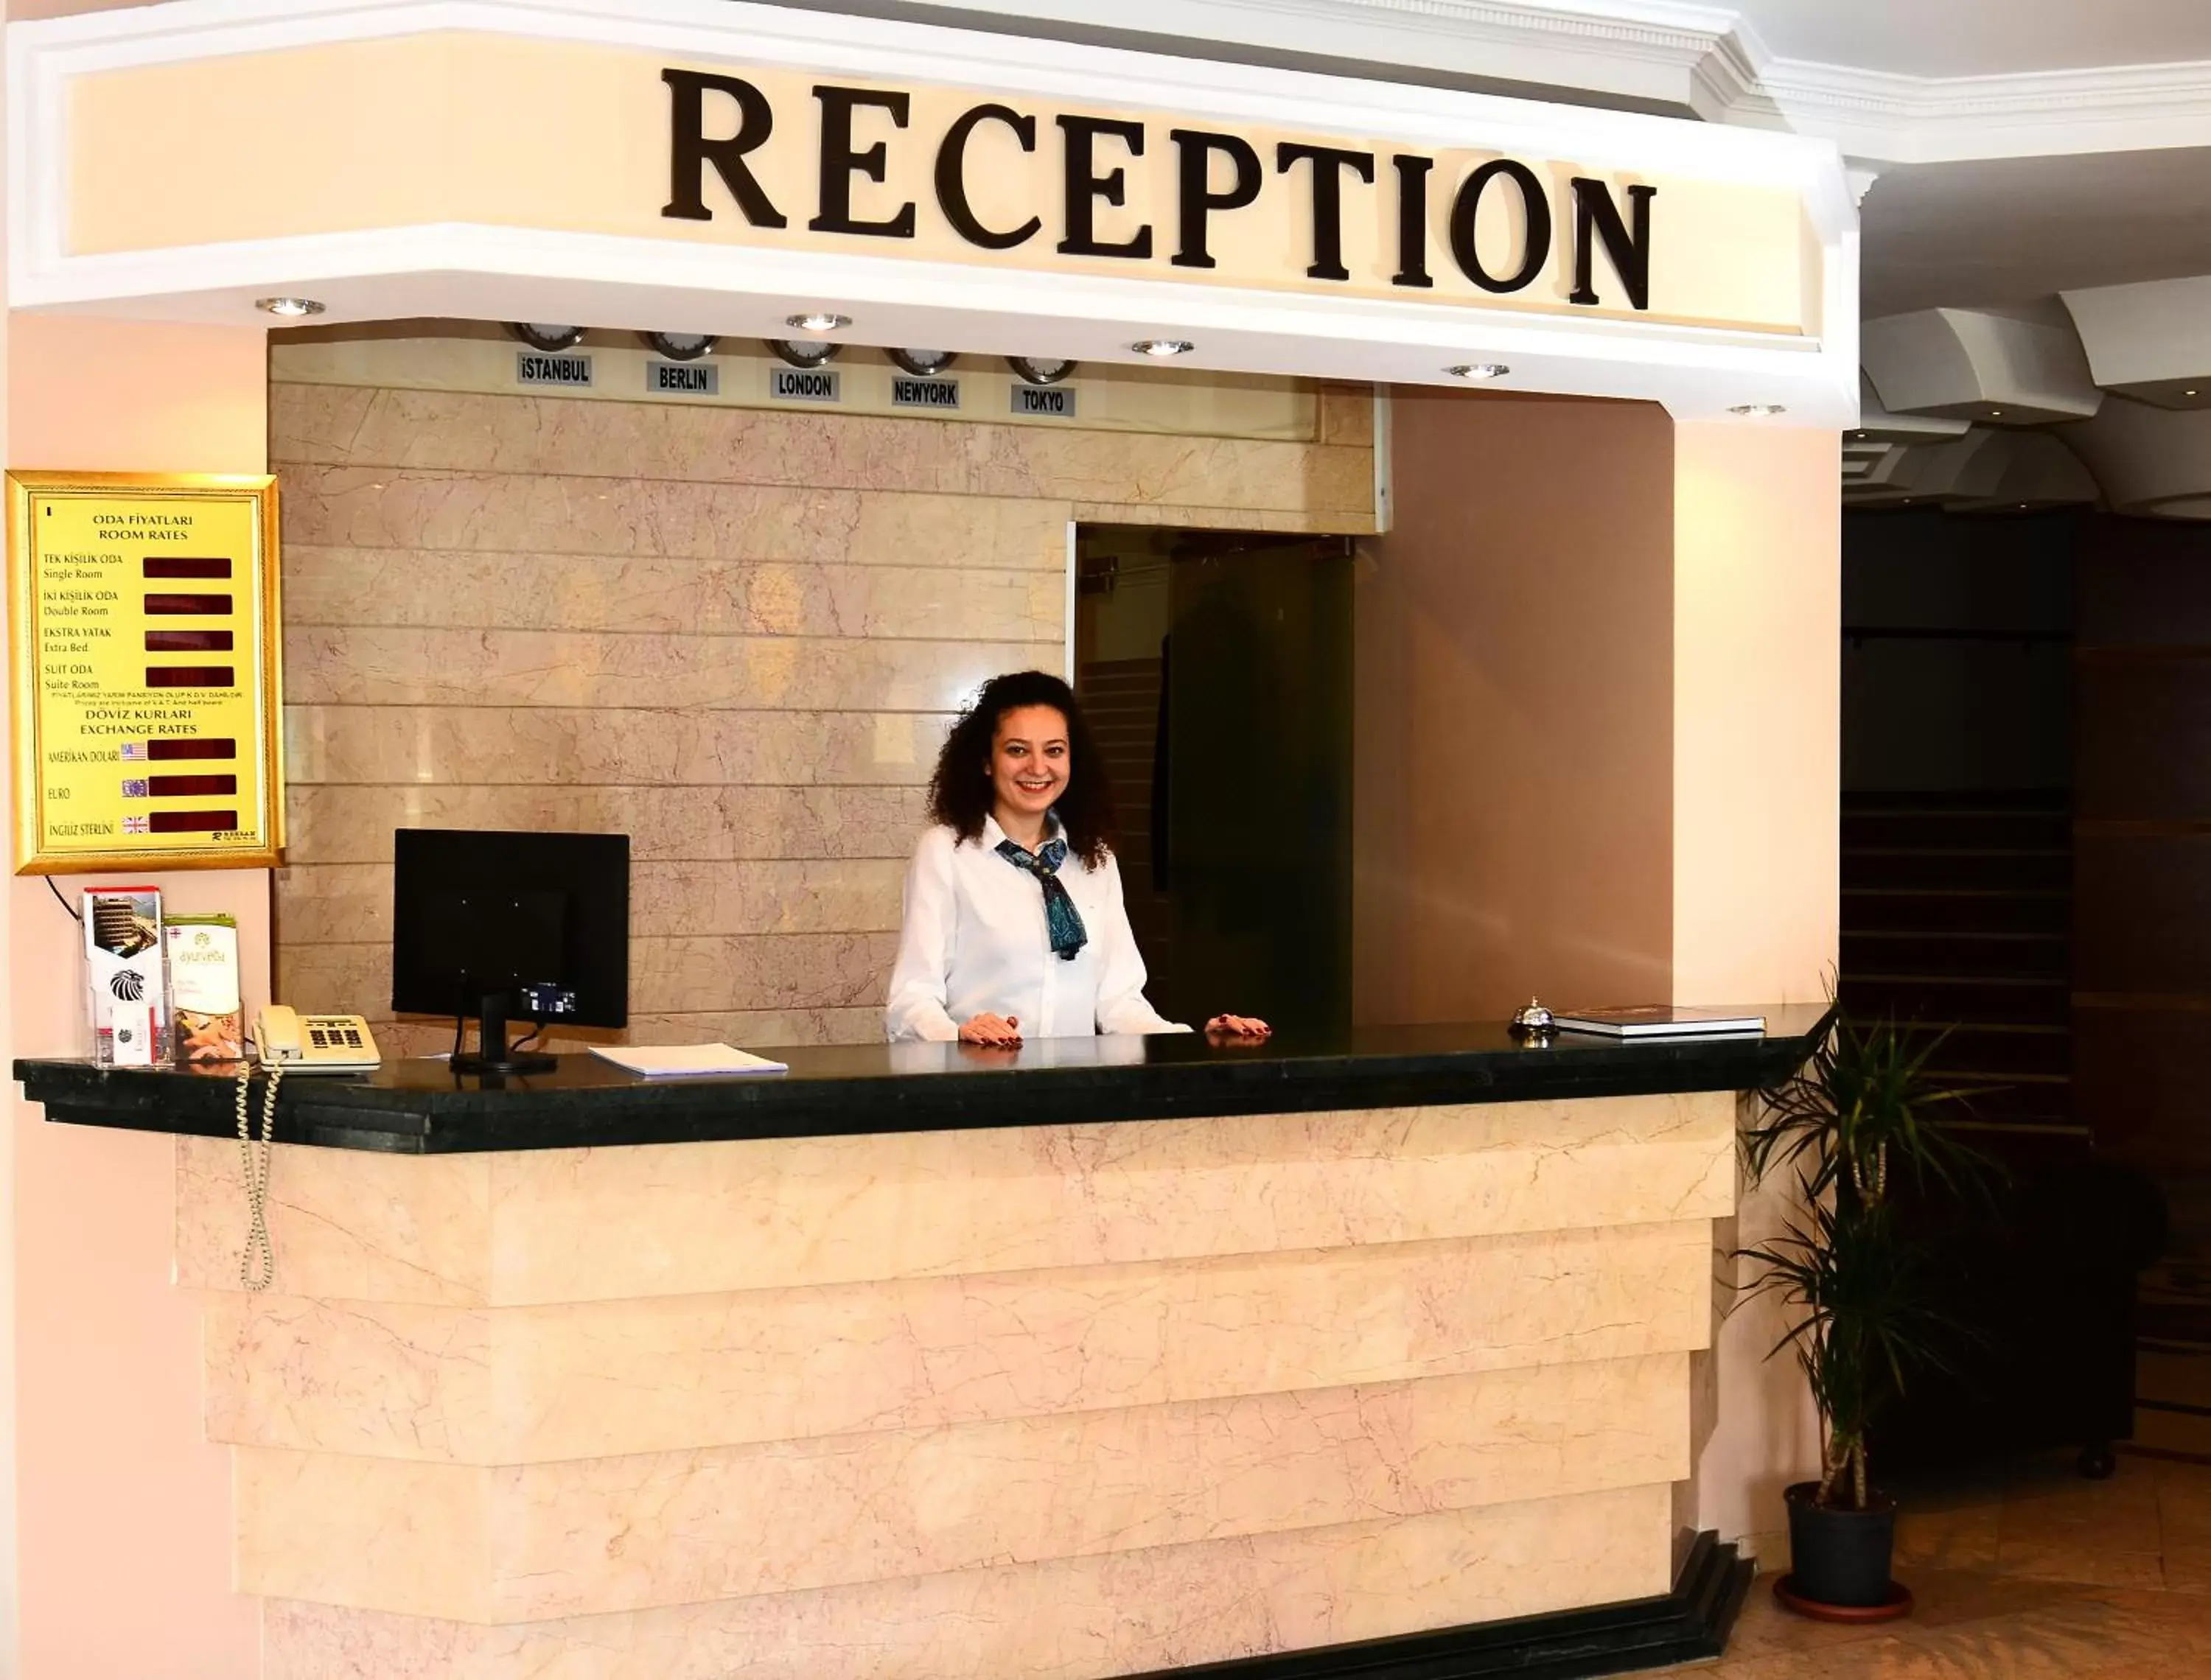 Staff, Lobby/Reception in Hotel By Karaaslan Inn